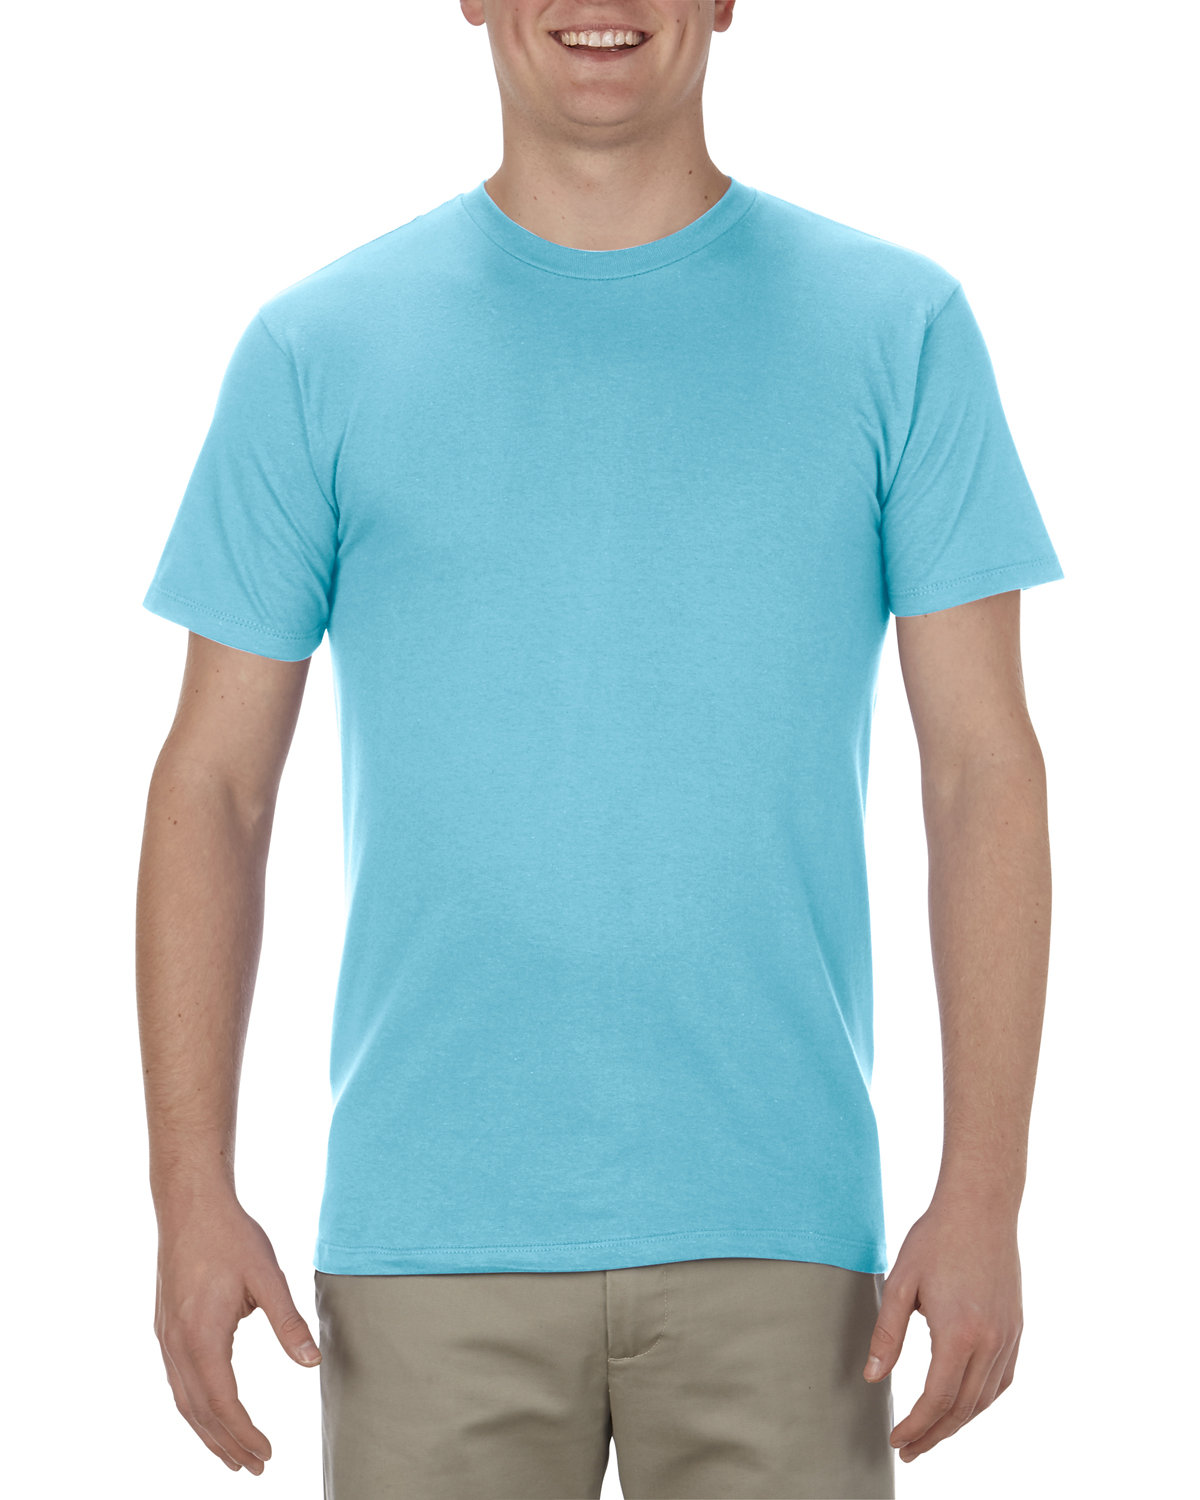 Alstyle Adult 4.3 oz., Ringspun Cotton T-Shirt PACIFIC BLUE 